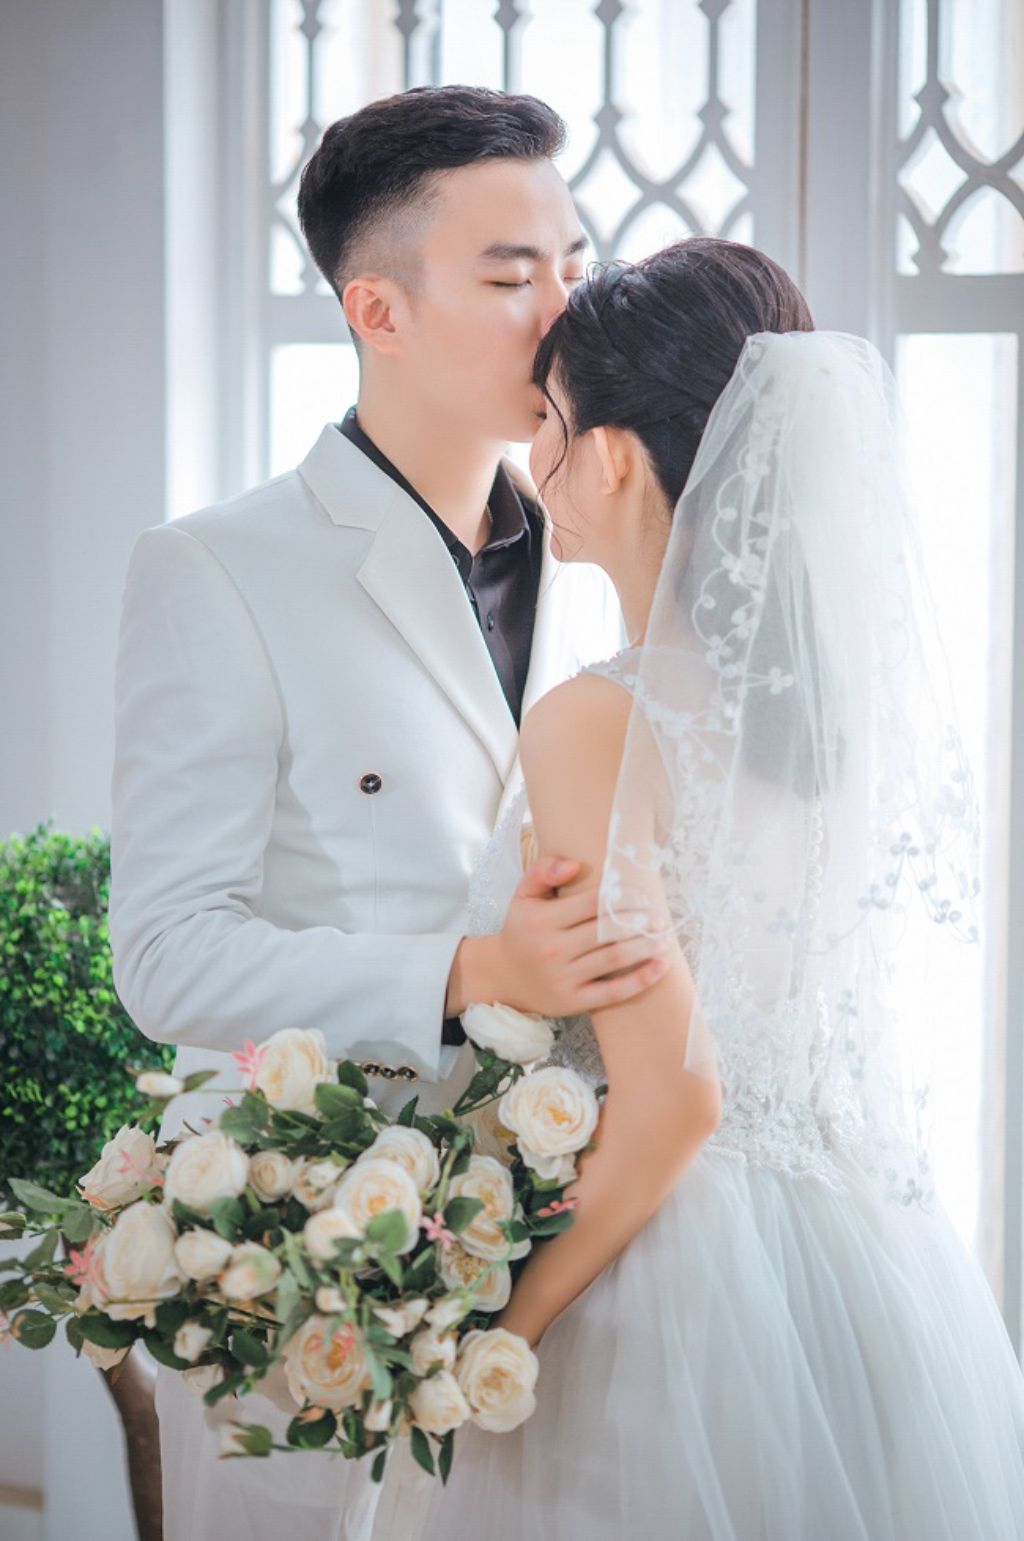 Hoa Mai Wedding Studio – Dịch vụ chụp ảnh cưới nổi tiếng tại Đà Nẵng